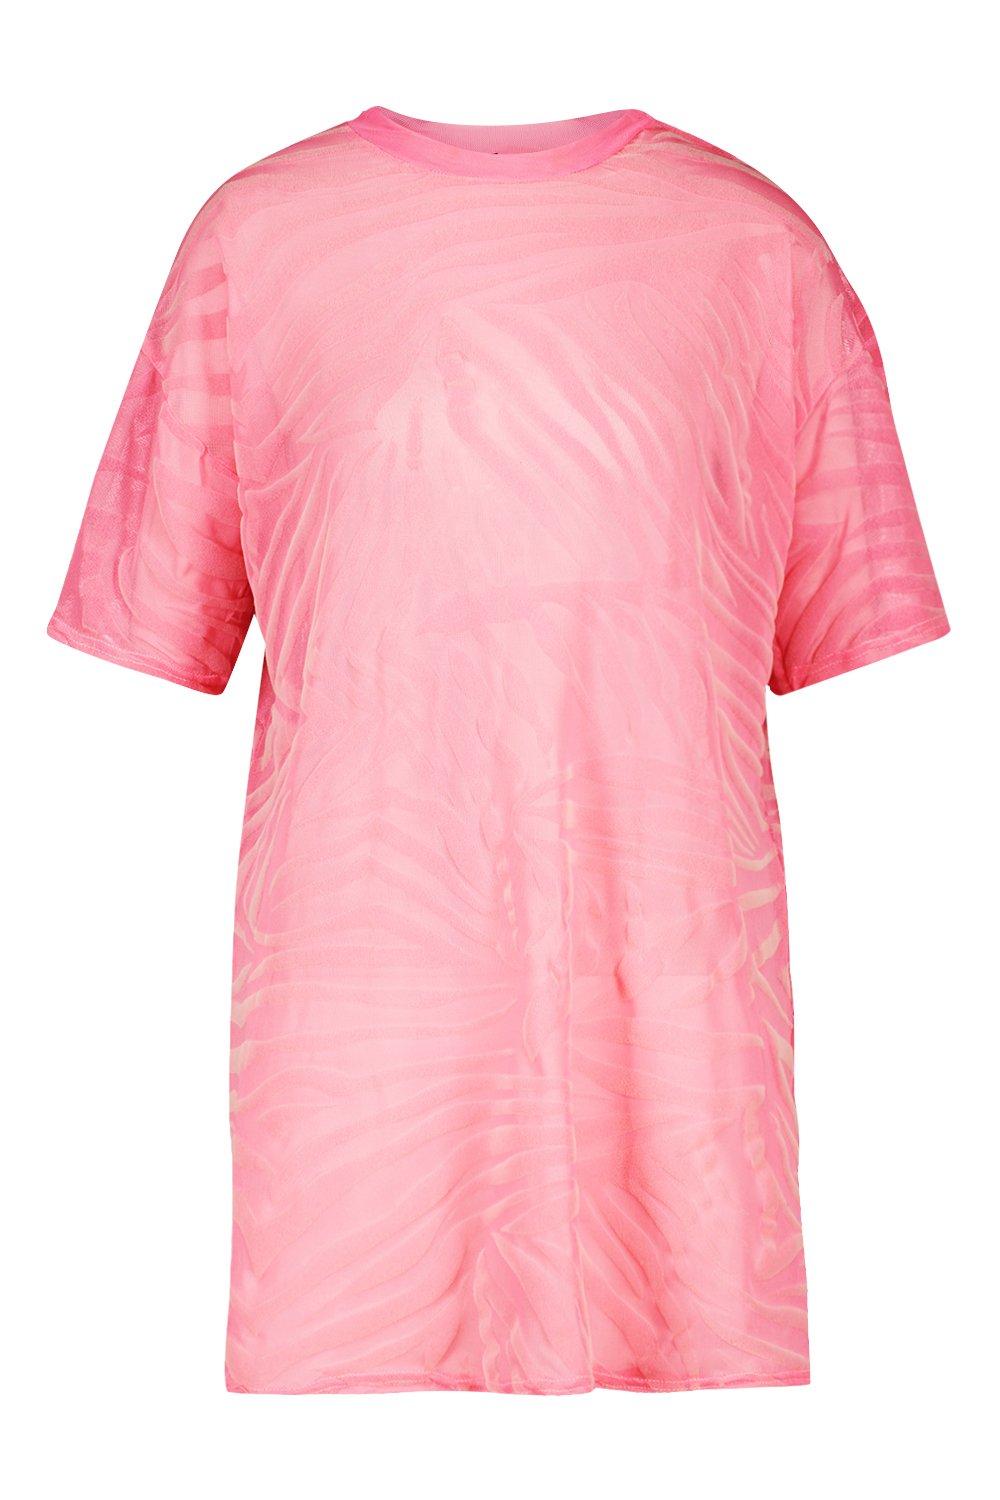 pink mesh t shirt dress